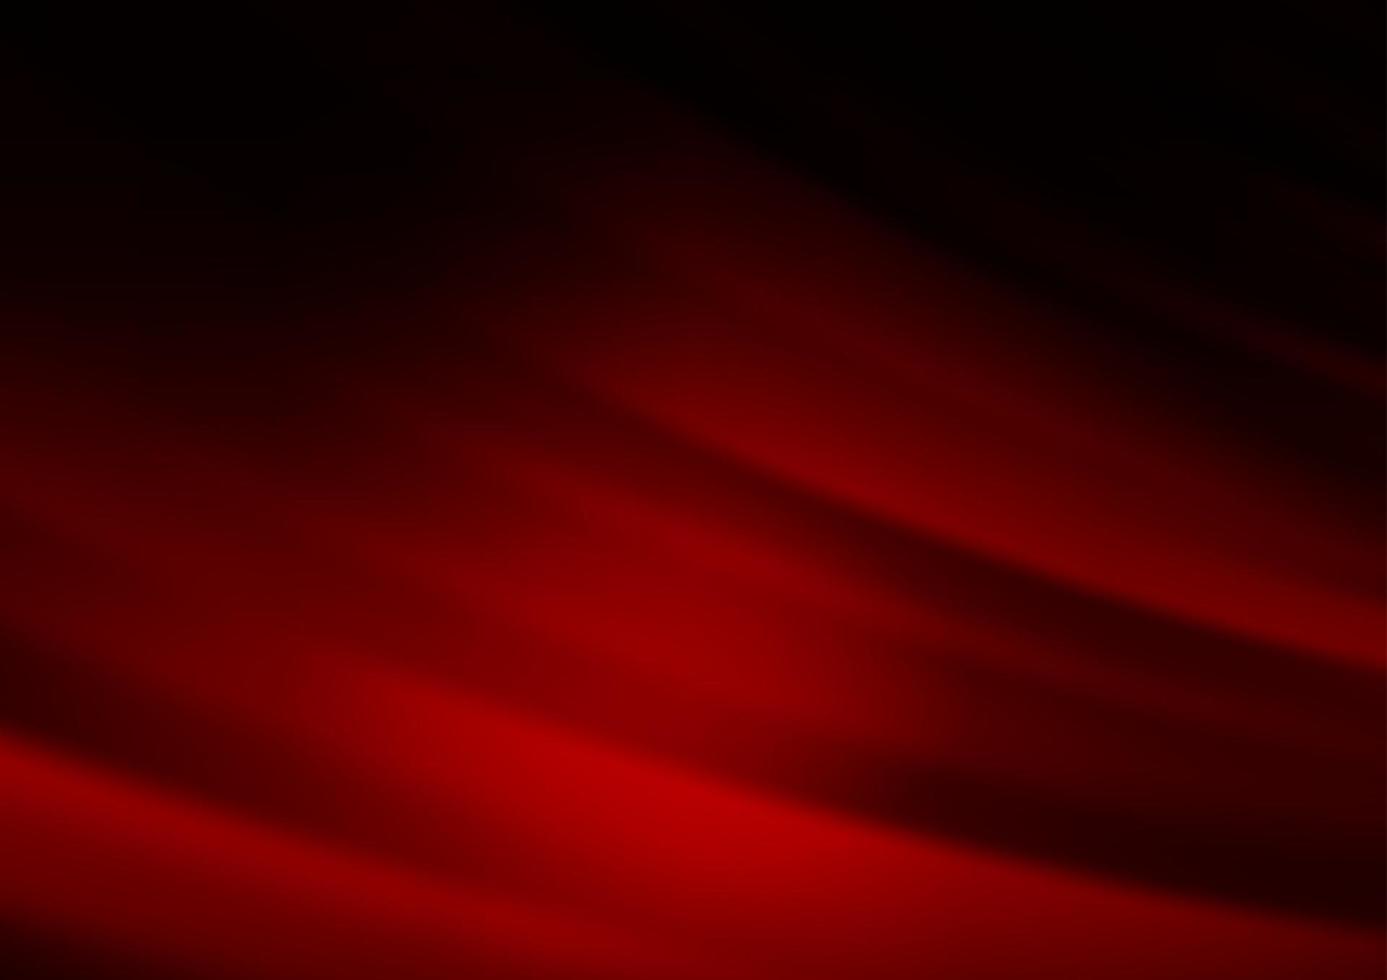 sfondo vettoriale rosso scuro con linee rette.